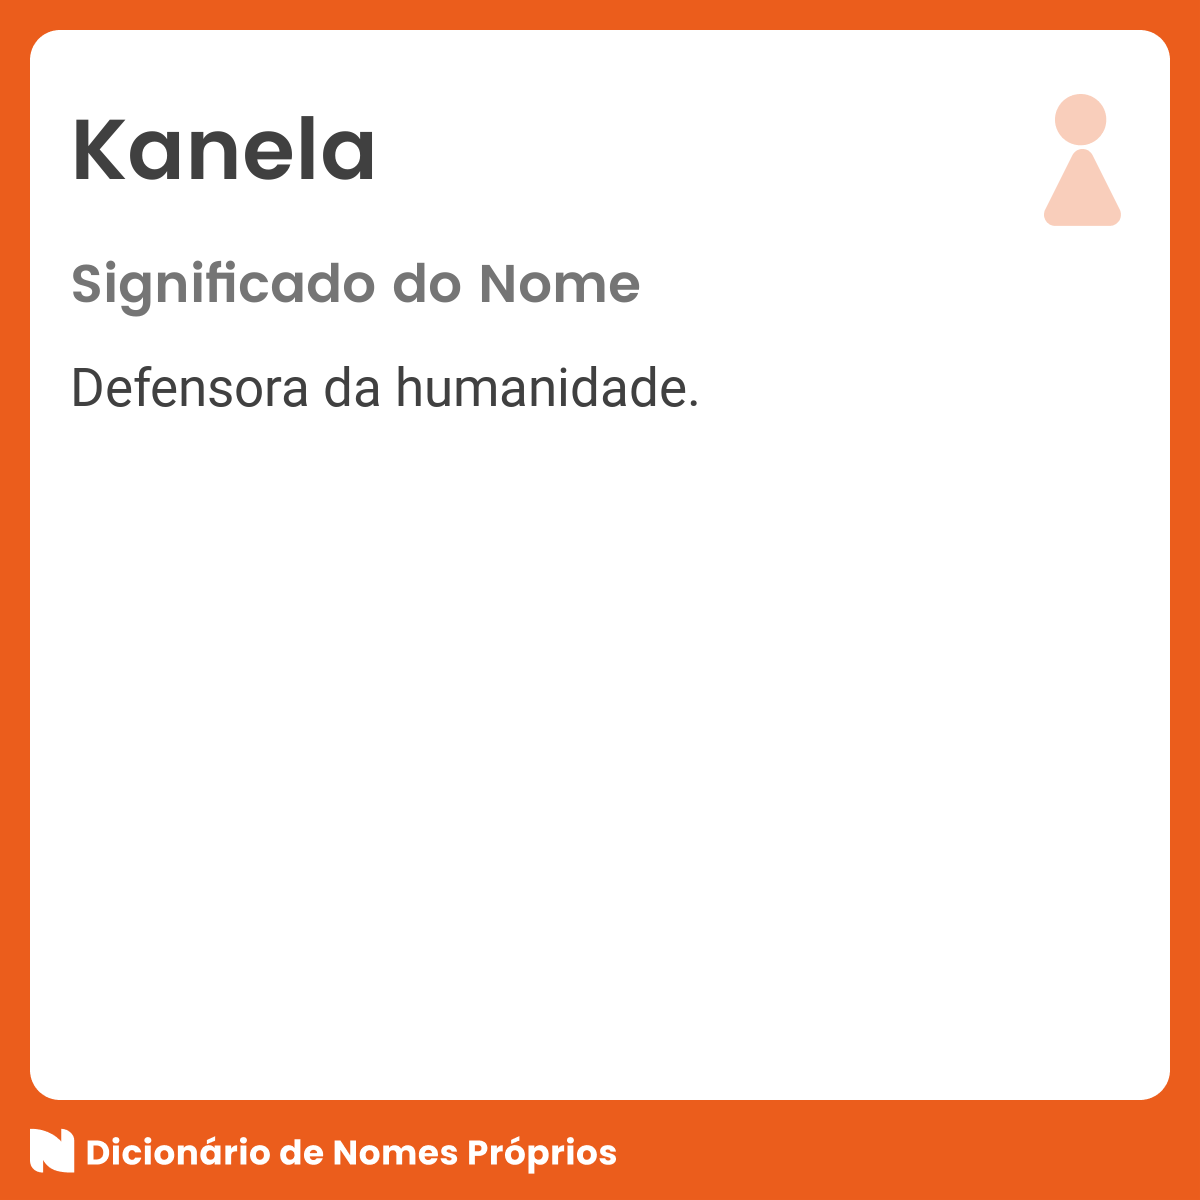 Nacela - Dicio, Dicionário Online de Português